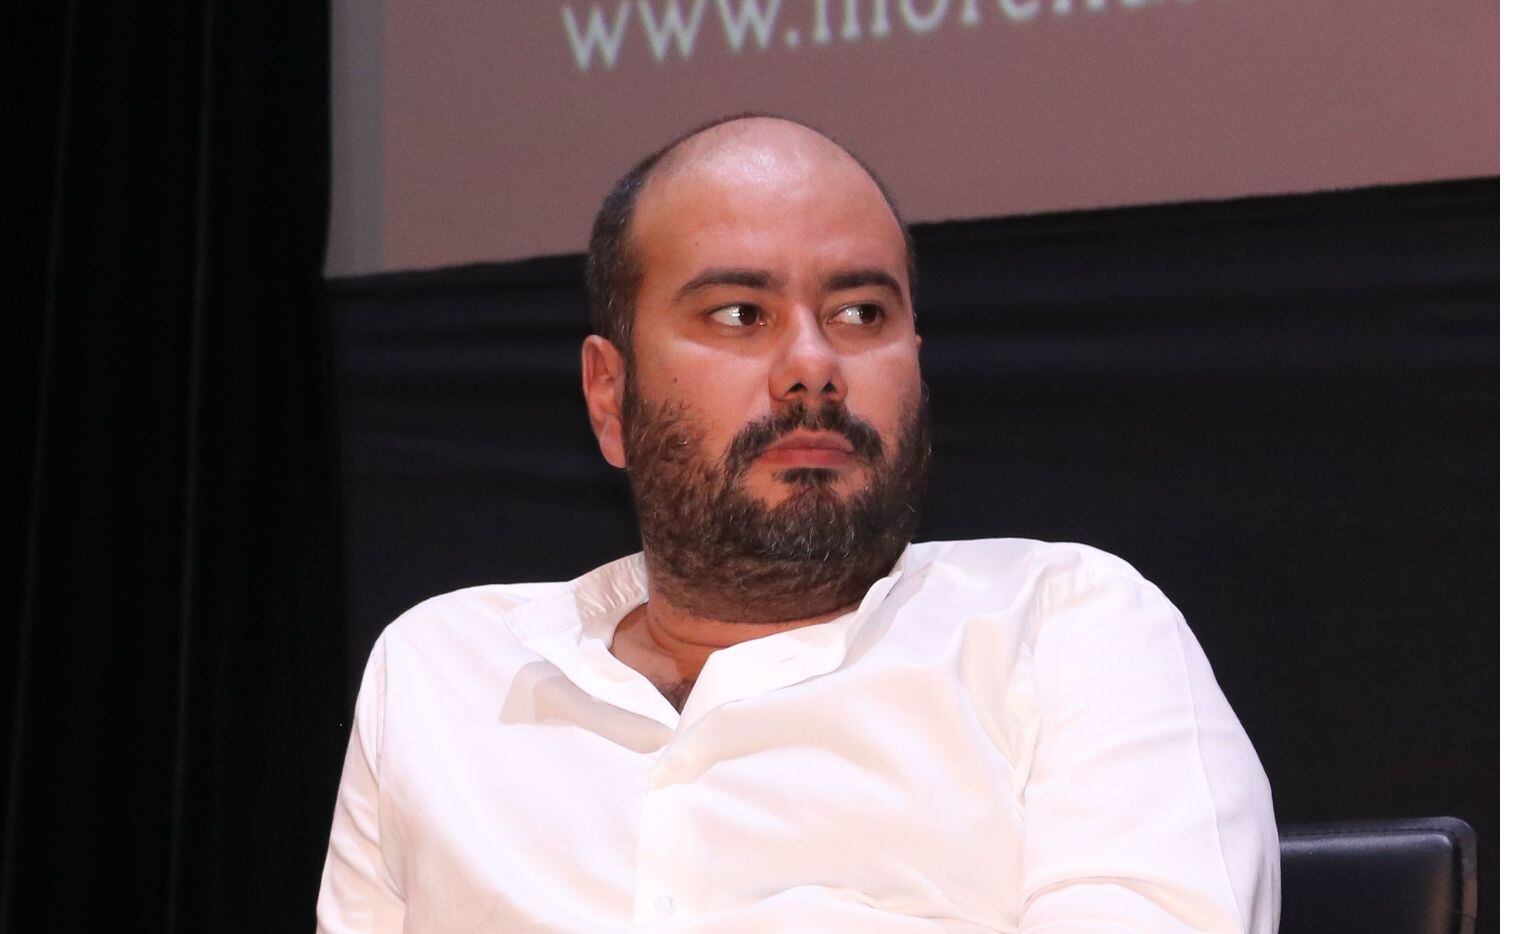 El cineasta colombiano Ciro Guerra tachó de falsas las denuncias de acoso y abuso sexual.